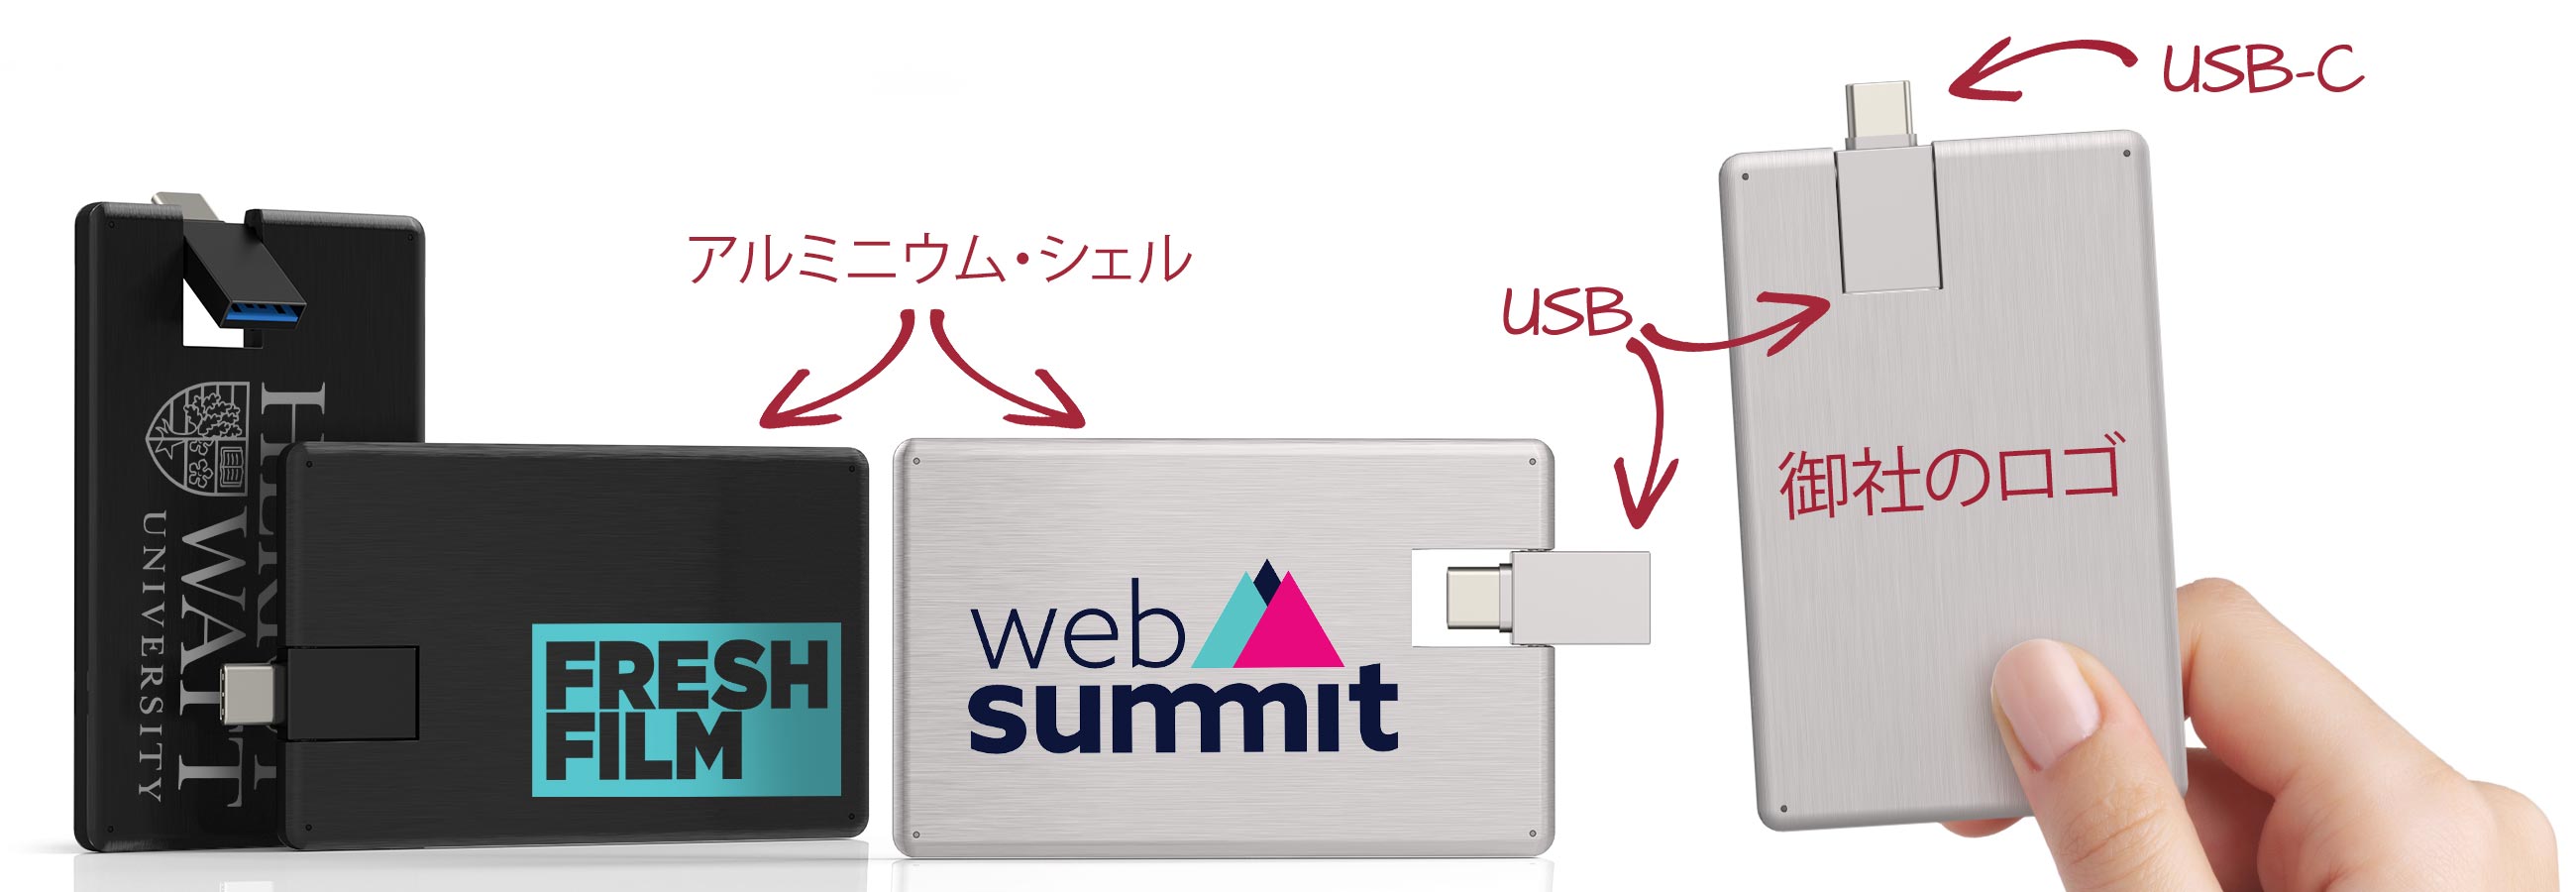 エース USBカード